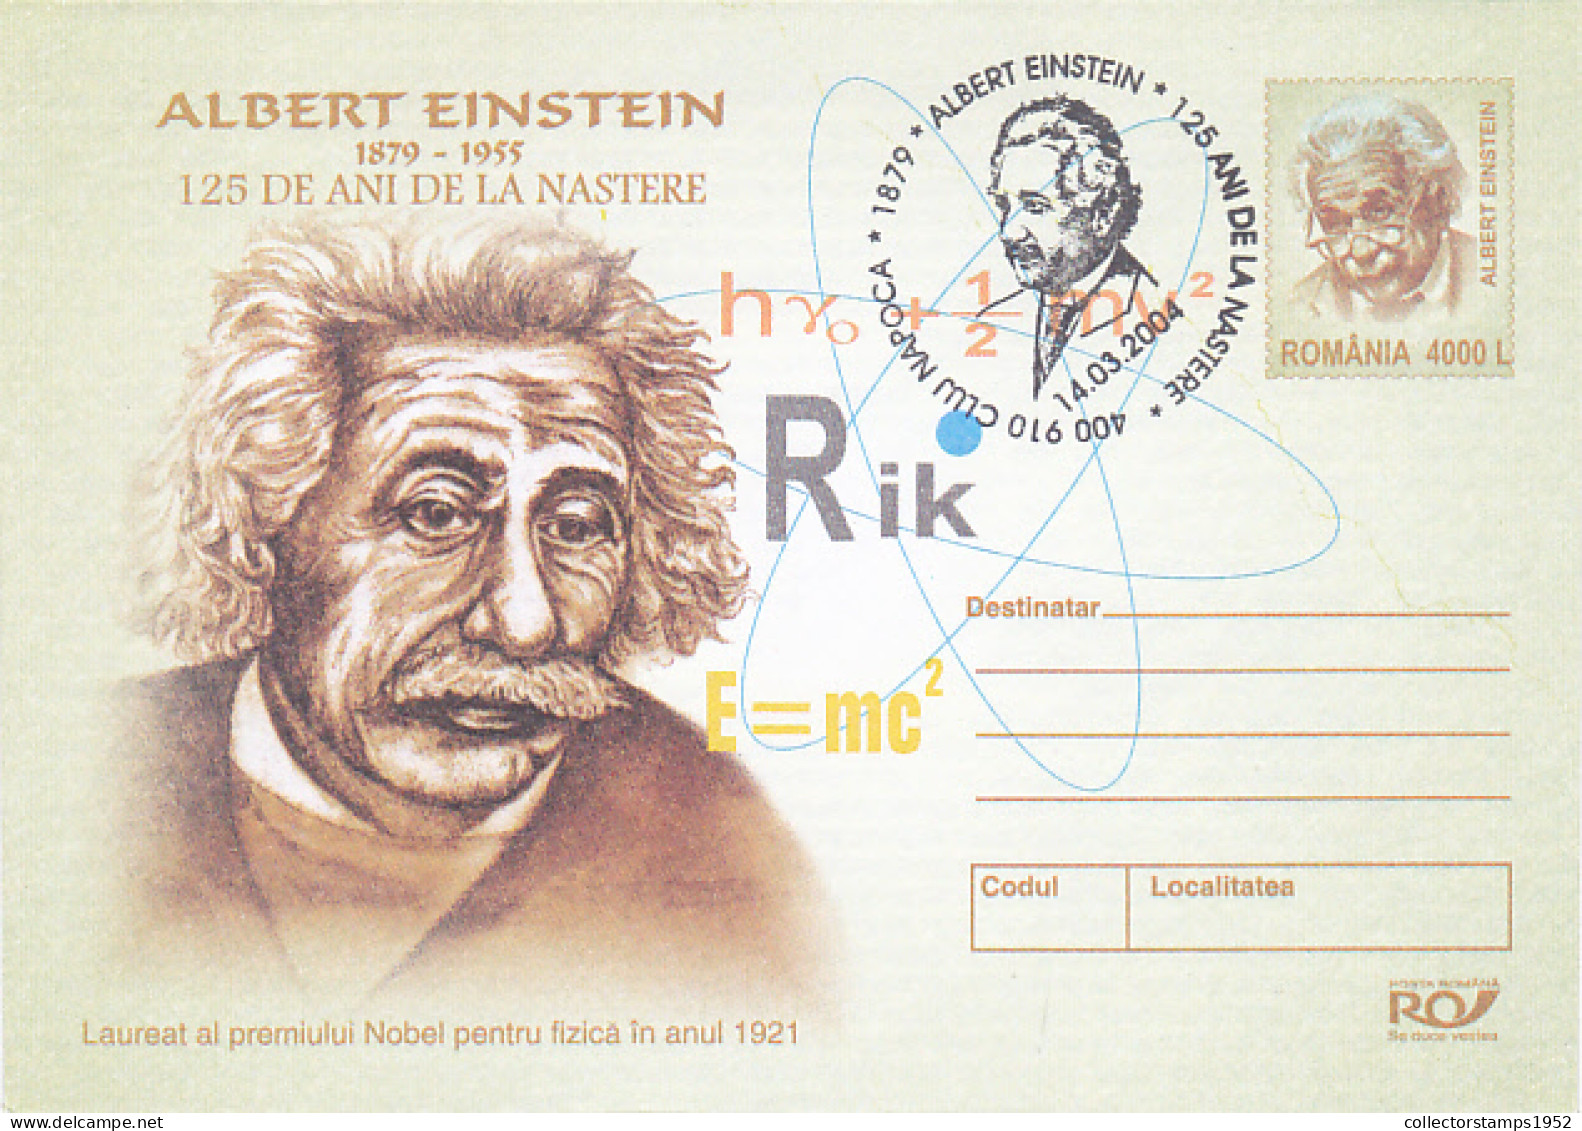 ALBERT EINSTEIN, SCIENTIST, FAMOUS PEOPLE, COVER STATIONERY, 2004, ROMANIA - Albert Einstein